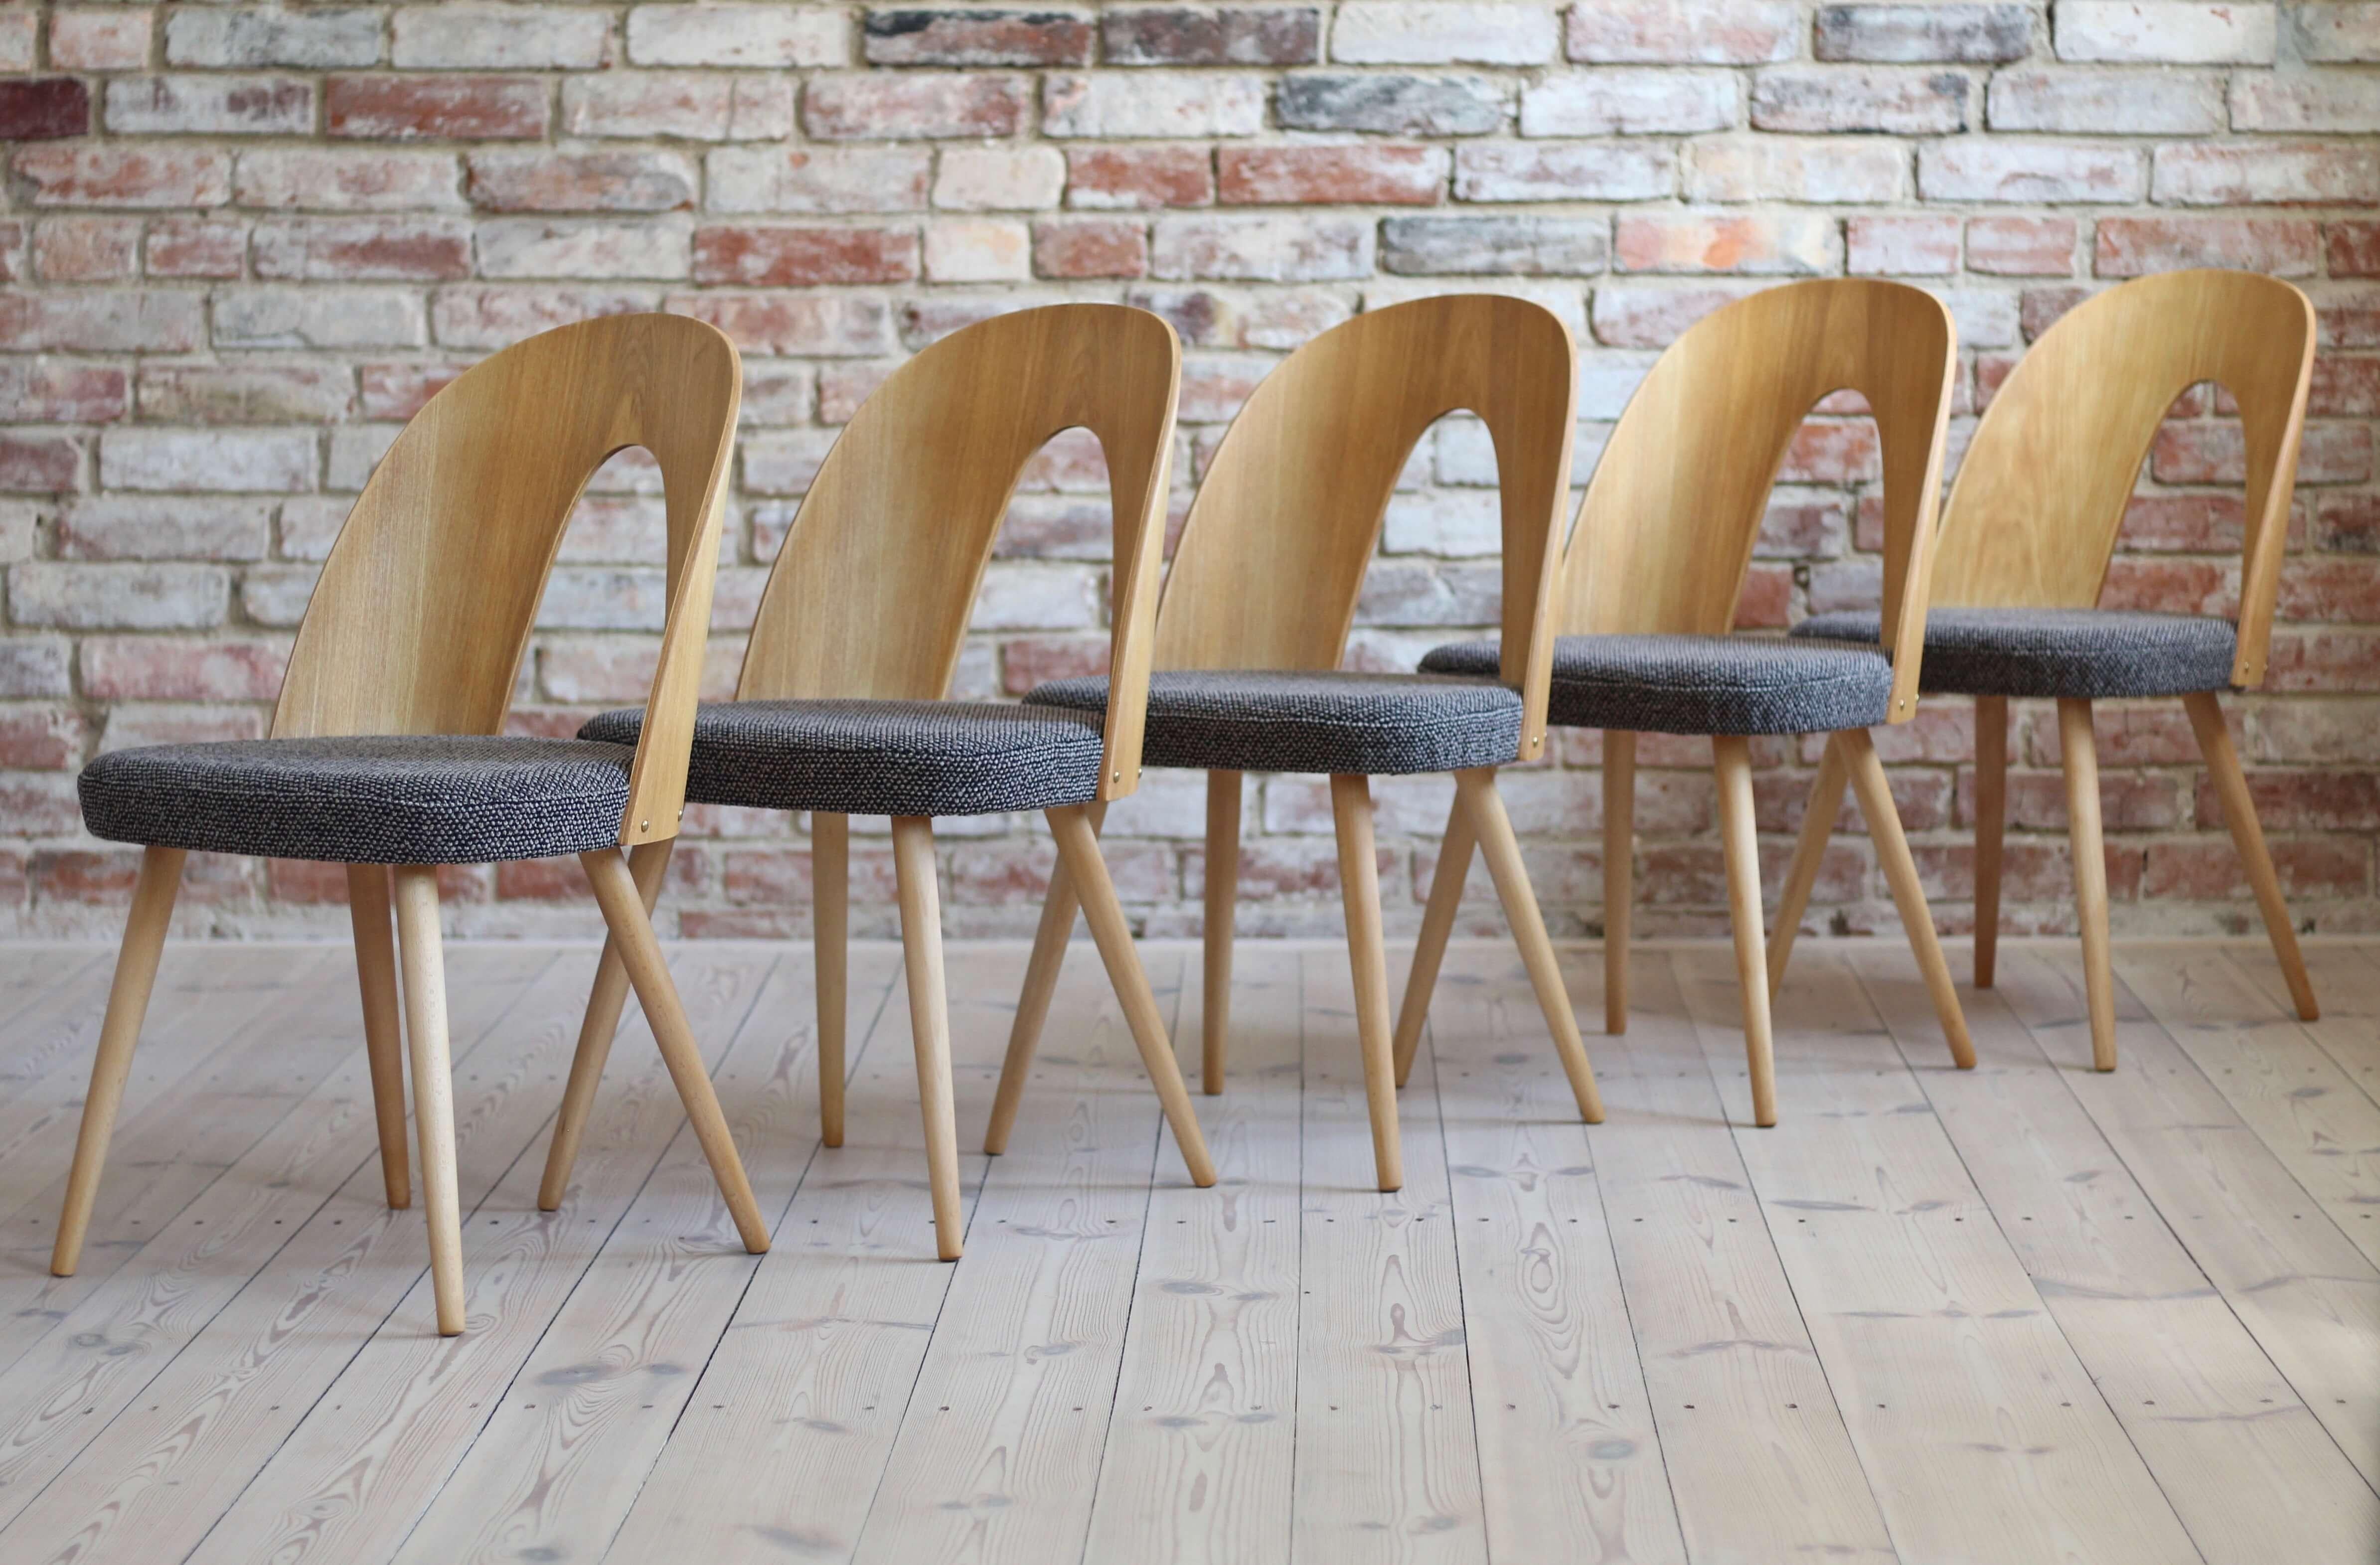 Cet ensemble de dix chaises de salle à manger vintage a été conçu par le designer tchèque Antonin Šuman dans les années 1960. Les chaises ont été entièrement restaurées et finies avec une huile de haute qualité qui leur a donné une finition